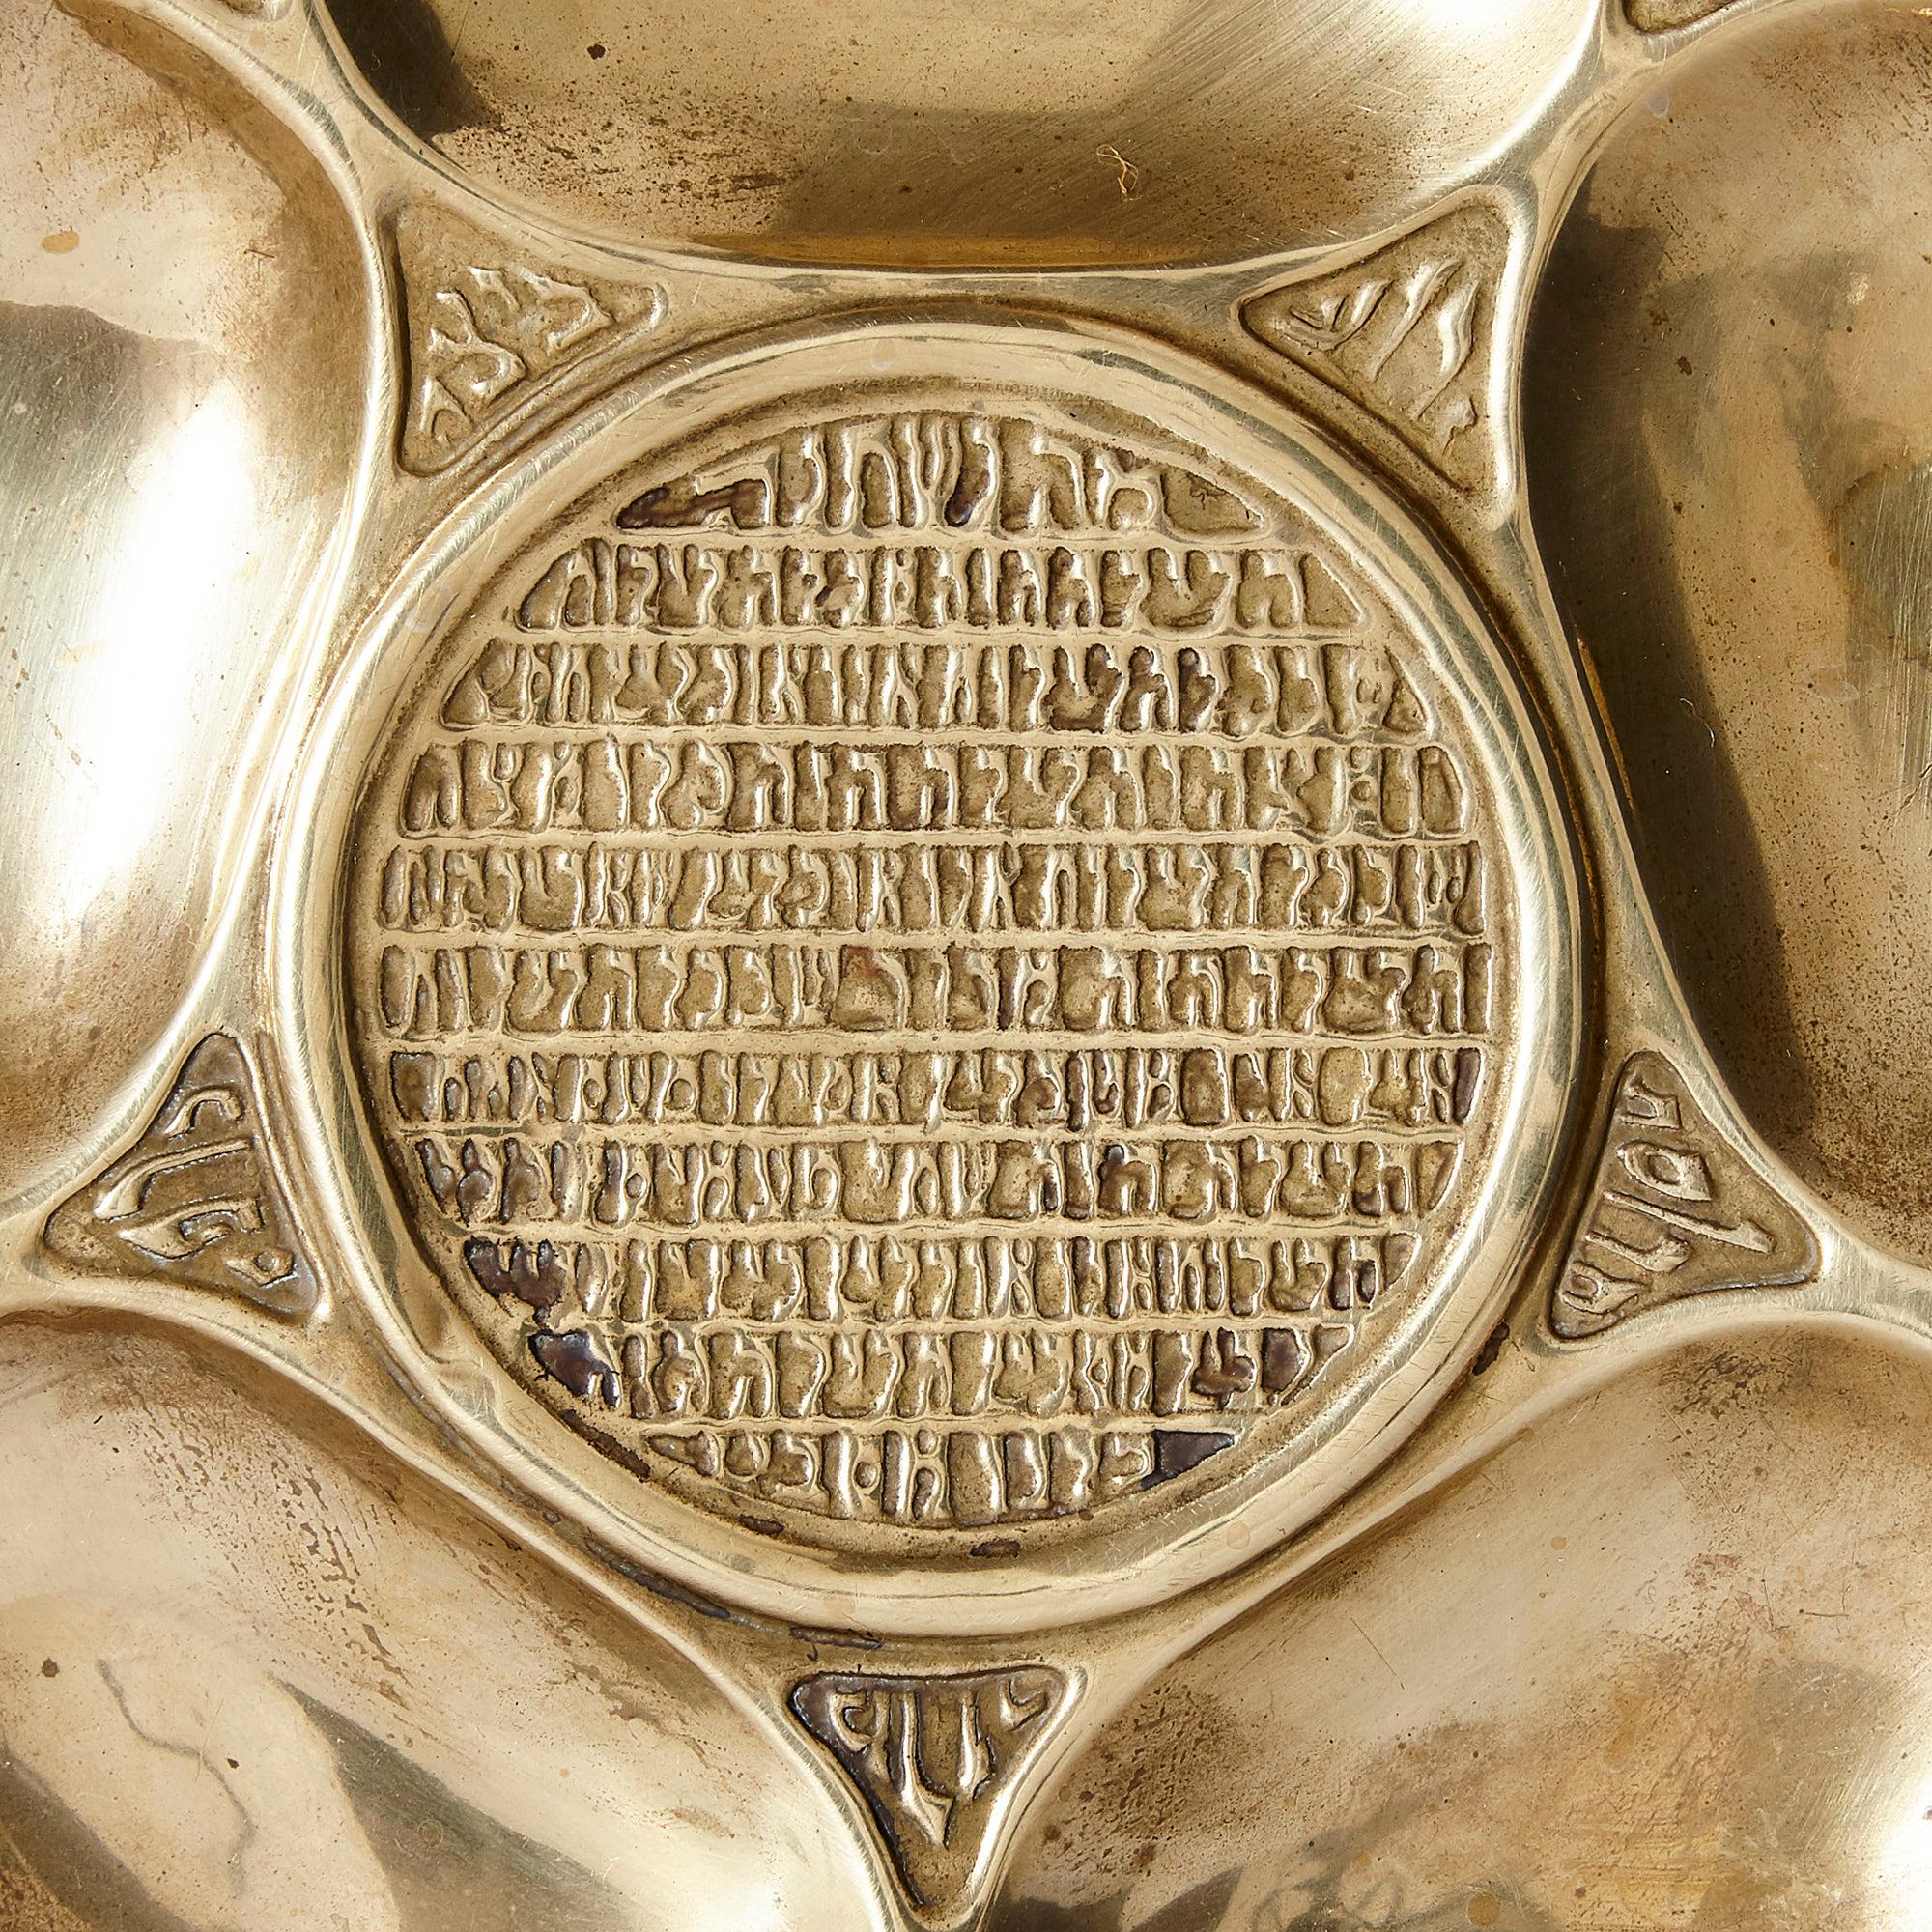 Antiker jüdischer Seder-Teller aus Messing von der Bezalel Academy of Arts and Design
Jerusalem, Anfang des 20. Jahrhunderts
Abmessungen: Höhe 1cm, Durchmesser 32cm

Dieser runde Messingteller ist ein wunderschöner antiker Seder-Teller für das